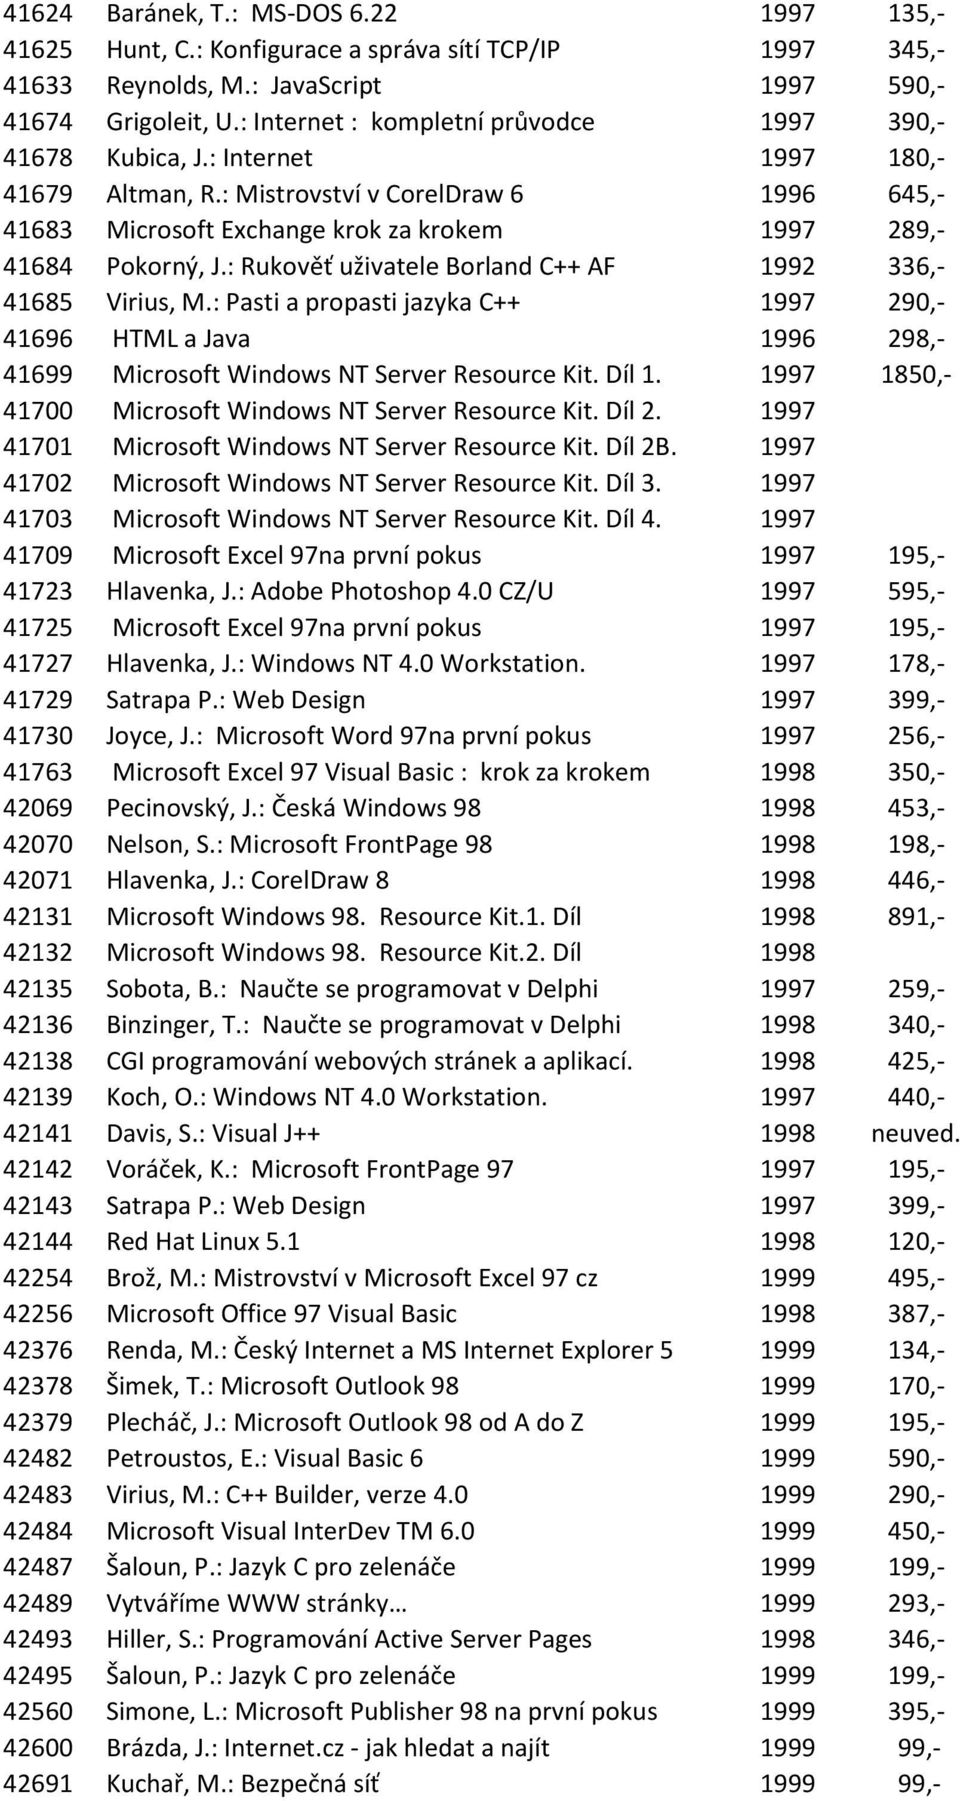 : Mistrovství v CorelDraw 6 1996 645,- 41683 Microsoft Exchange krok za krokem 1997 289,- 41684 Pokorný, J.: Rukověť uživatele Borland C++ AF 1992 336,- 41685 Virius, M.